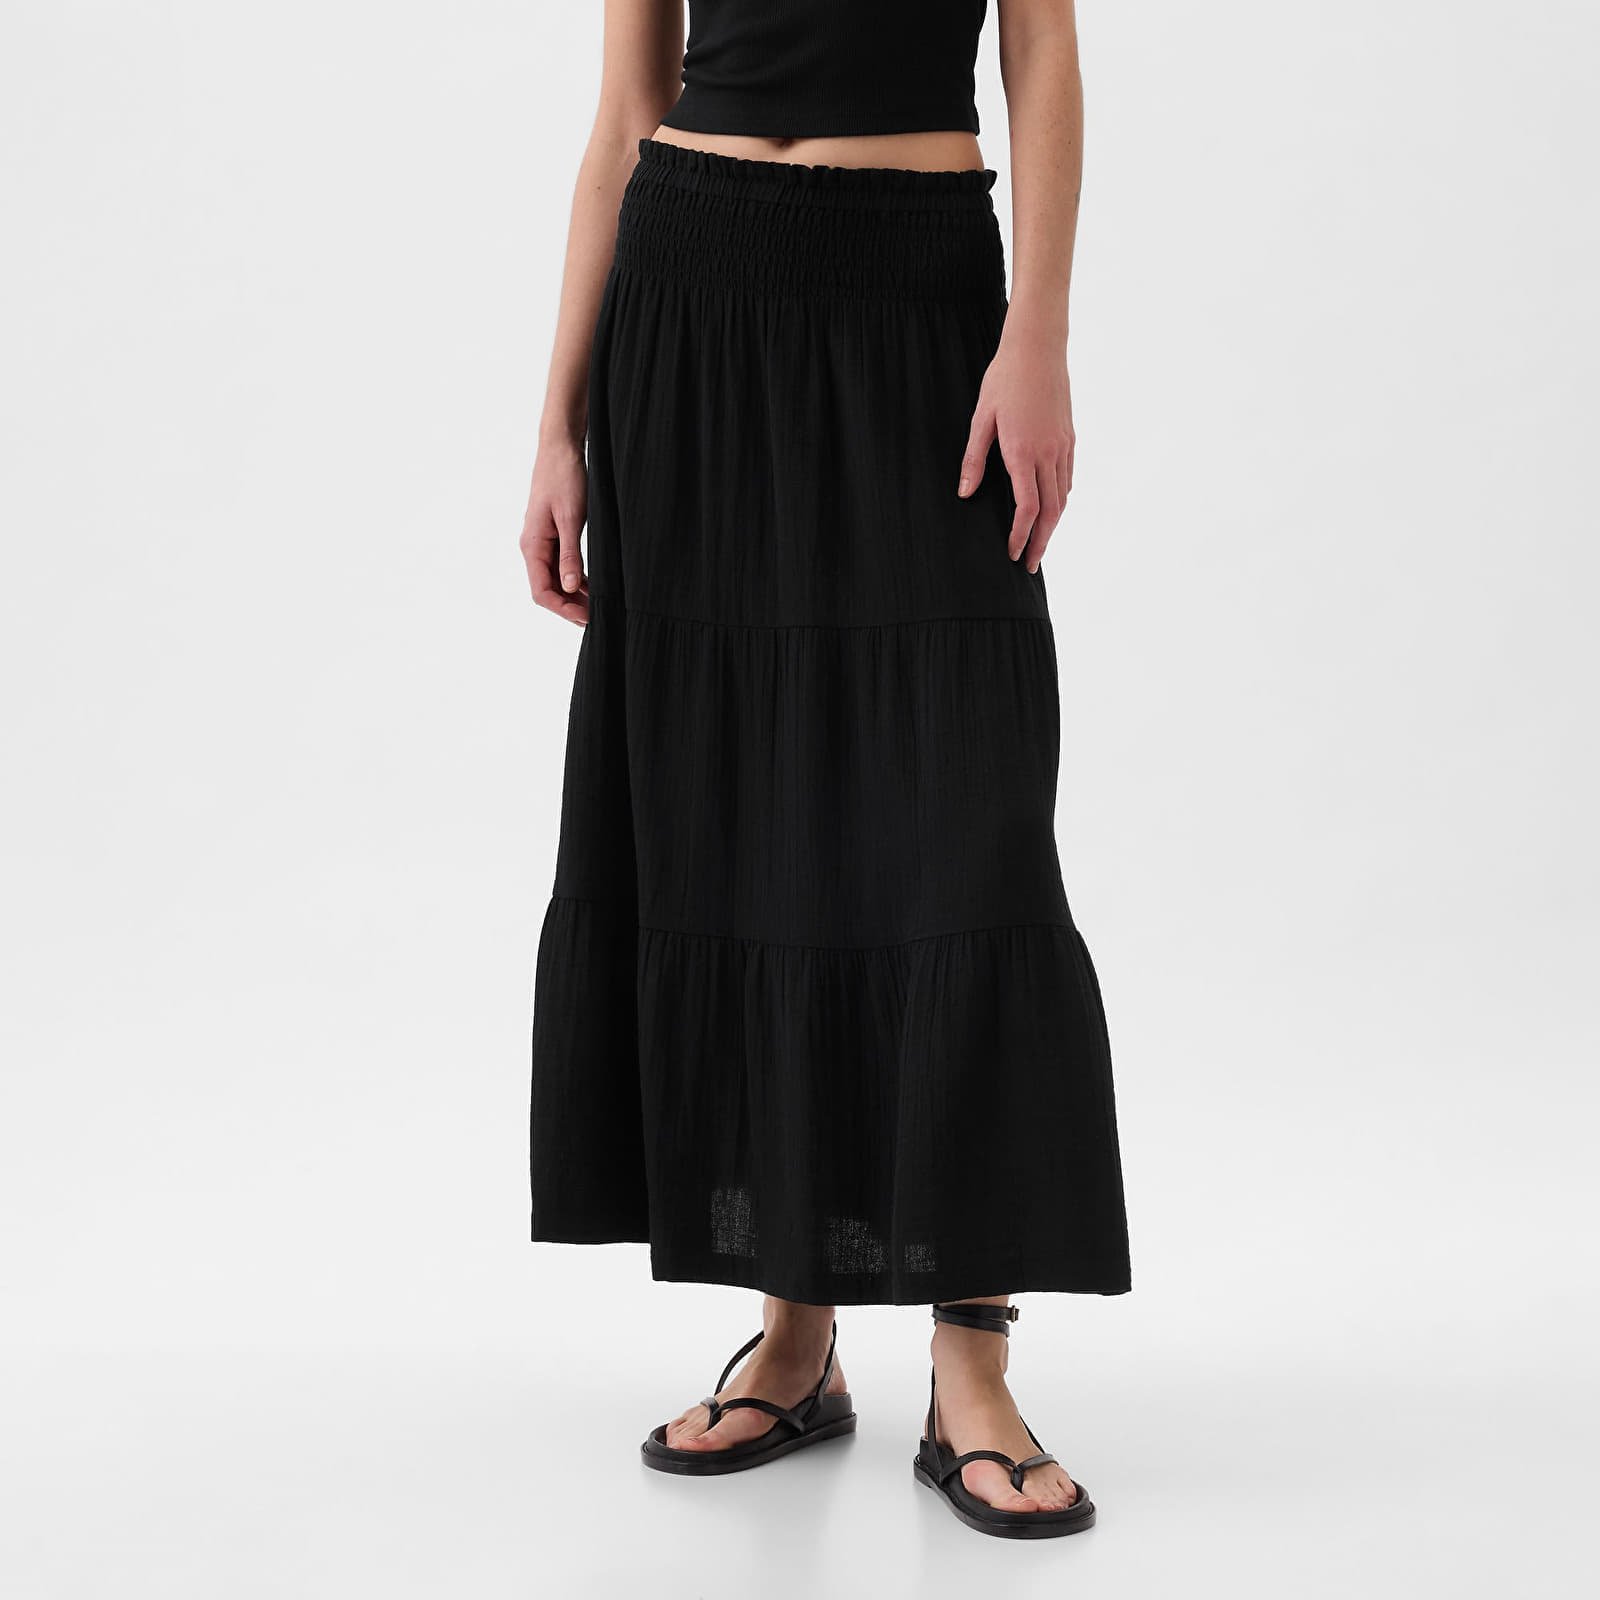 Skirt Pull On Gauze Maxi Skirt Black